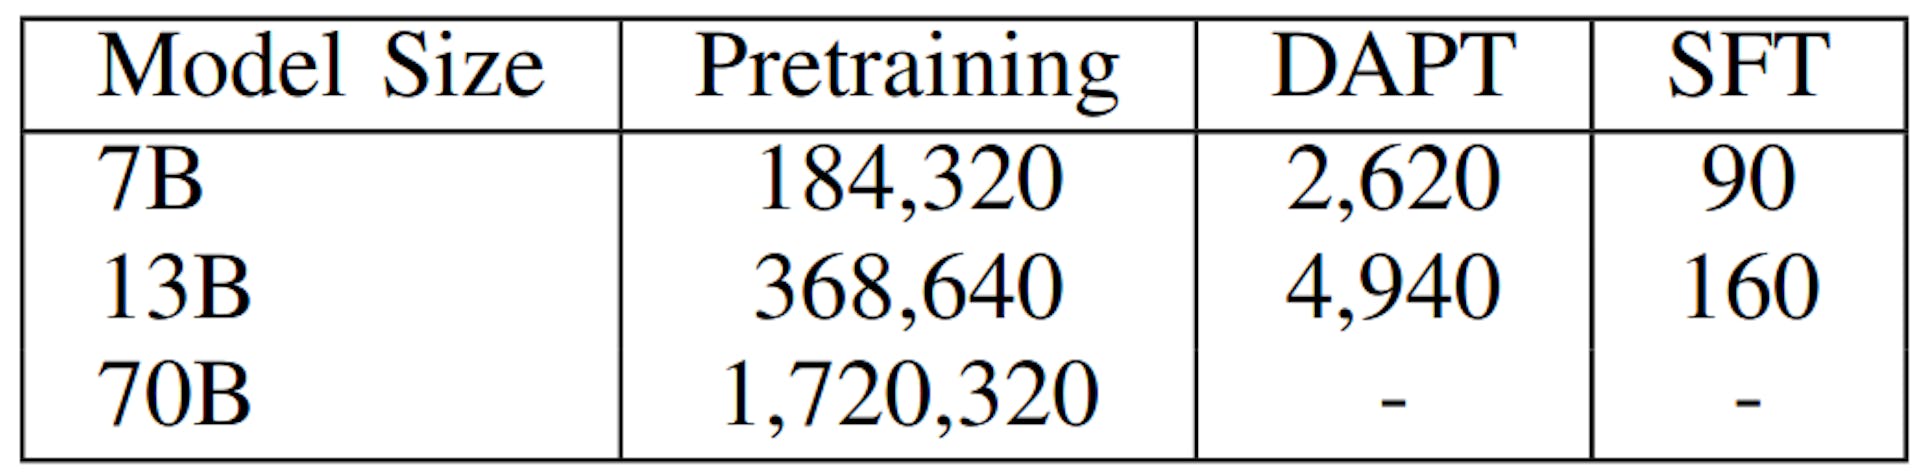 TABELLE IV: Trainingskosten von LLaMA2-Modellen in GPU-Stunden. Vortrainingskosten aus [5].